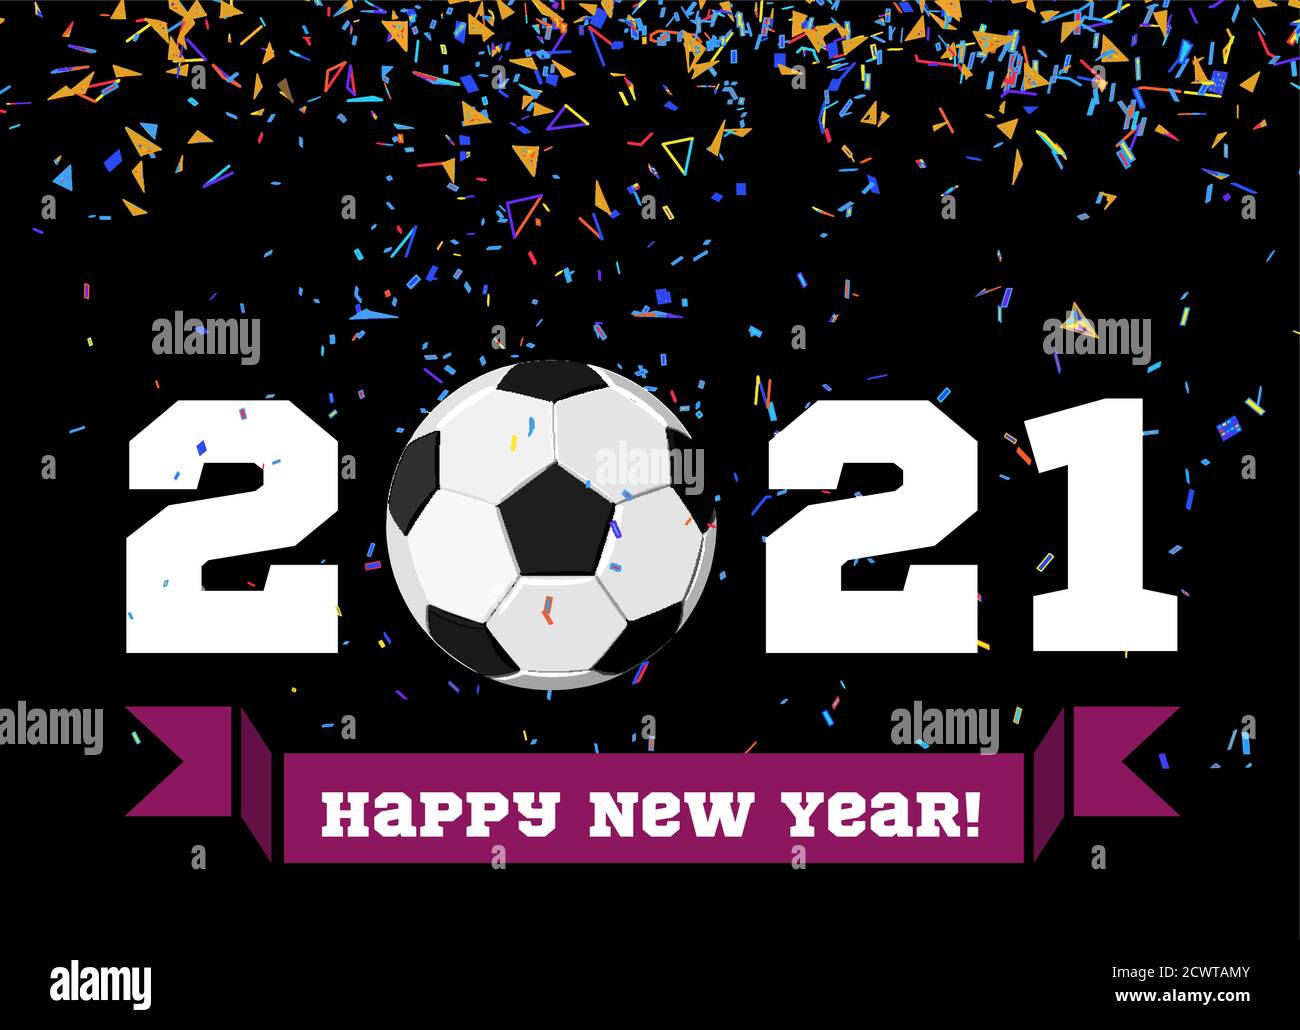 Felice anno nuovo 2019 con palla da calcio e confetti sullo sfondo. Illustrazione della palla da calcio Illustrazione Vettoriale